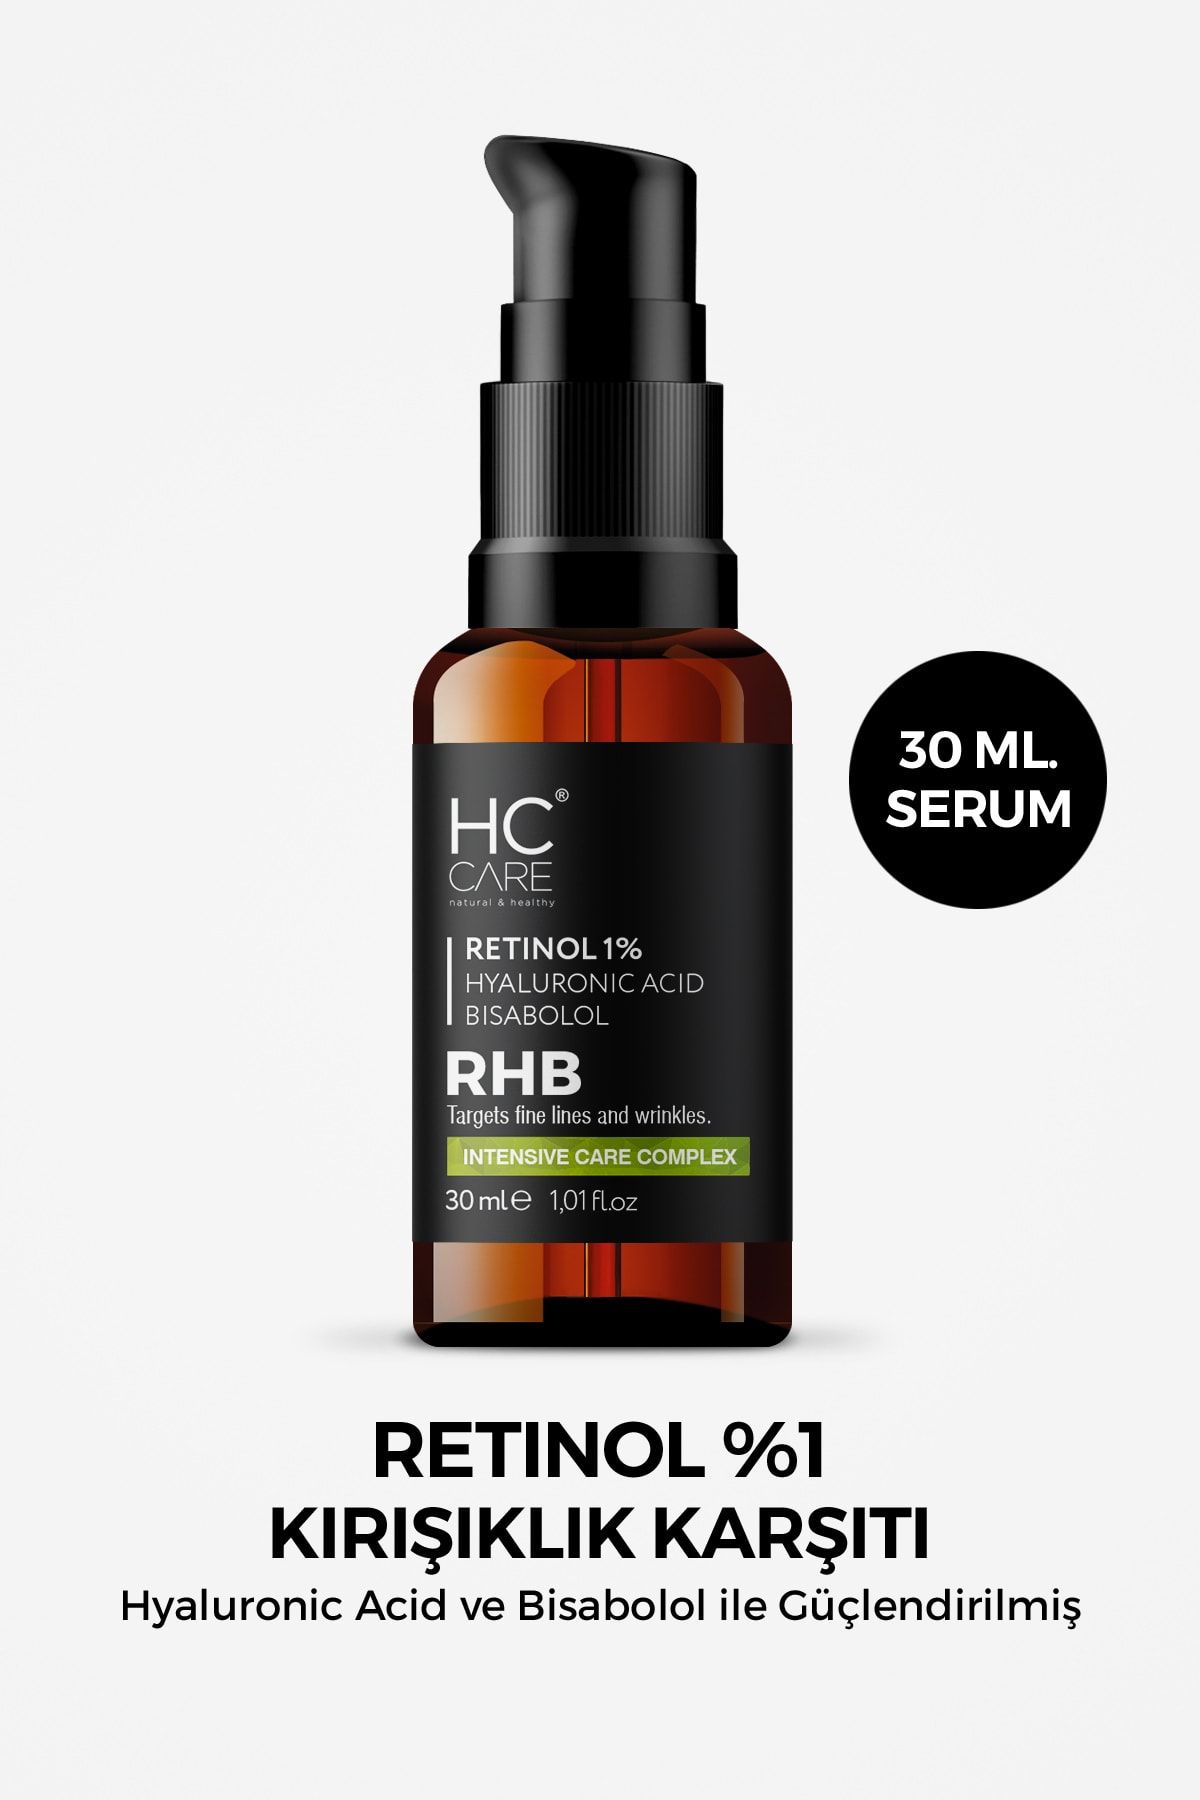 HC Care Retinol Serum %1 Kırışıklık Ve Yaşlanma Karşıtı Cilt Bakım Serumu 30 Ml.